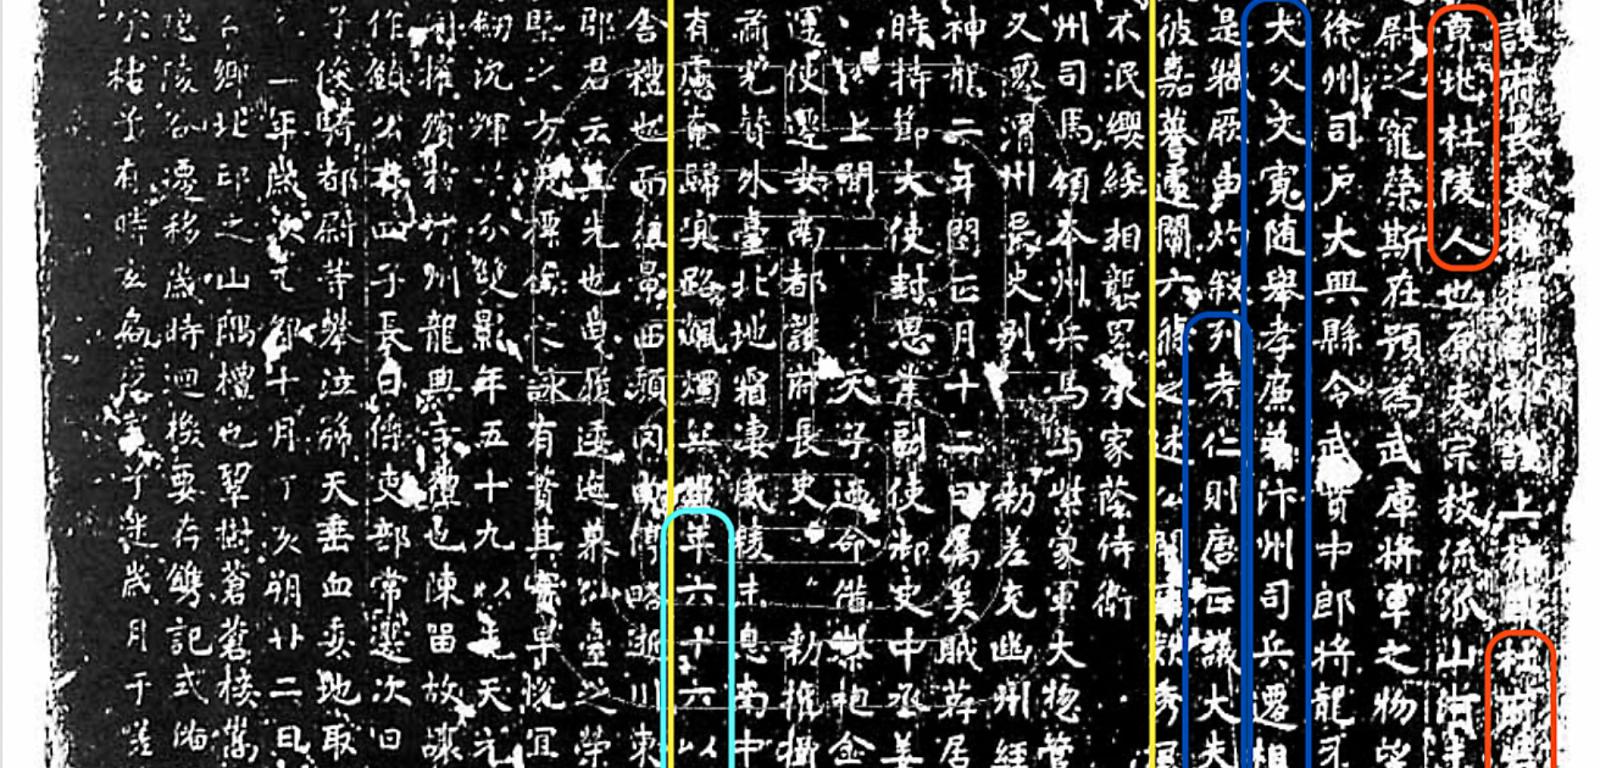 Odbicie epitafium nagrobka zmarłego przedstawiciela elity dynastii Tang – Du Zhongliang 杜忠良. Kolor czerwony – nazwisko i nazwa regionu zamieszkania; niebieski – pełne imiona dziadka i ojca oraz stanowiska; żółty – ścieżka kariery; zielony – wiek, czas śmierci.